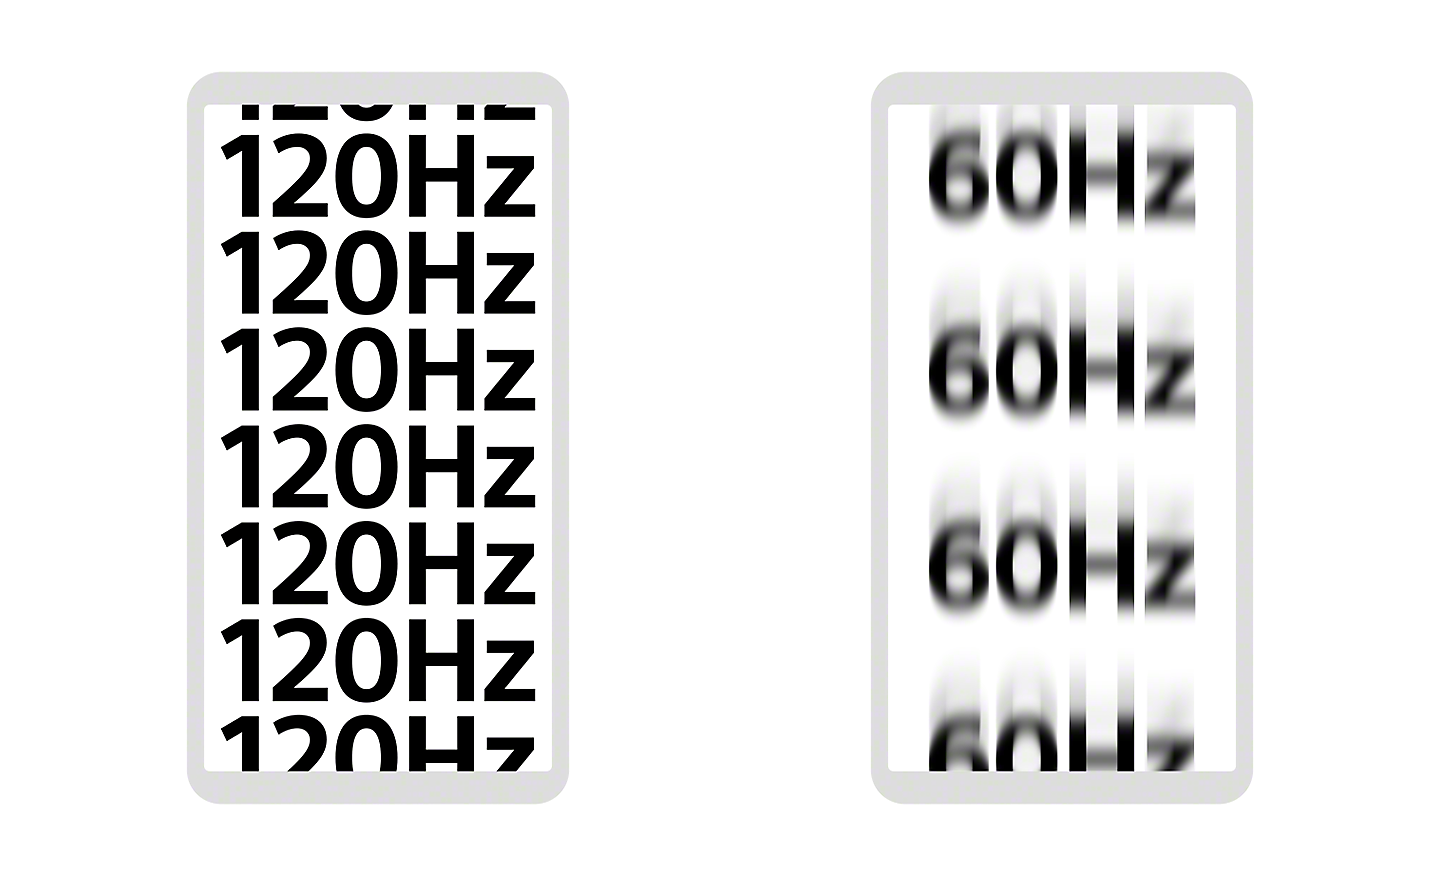 Abbildung von zwei Smartphone-Displays: eins mit 120 Hz und scharfem Fokus, das andere mit 60 Hz und etwas verschwommenem Fokus